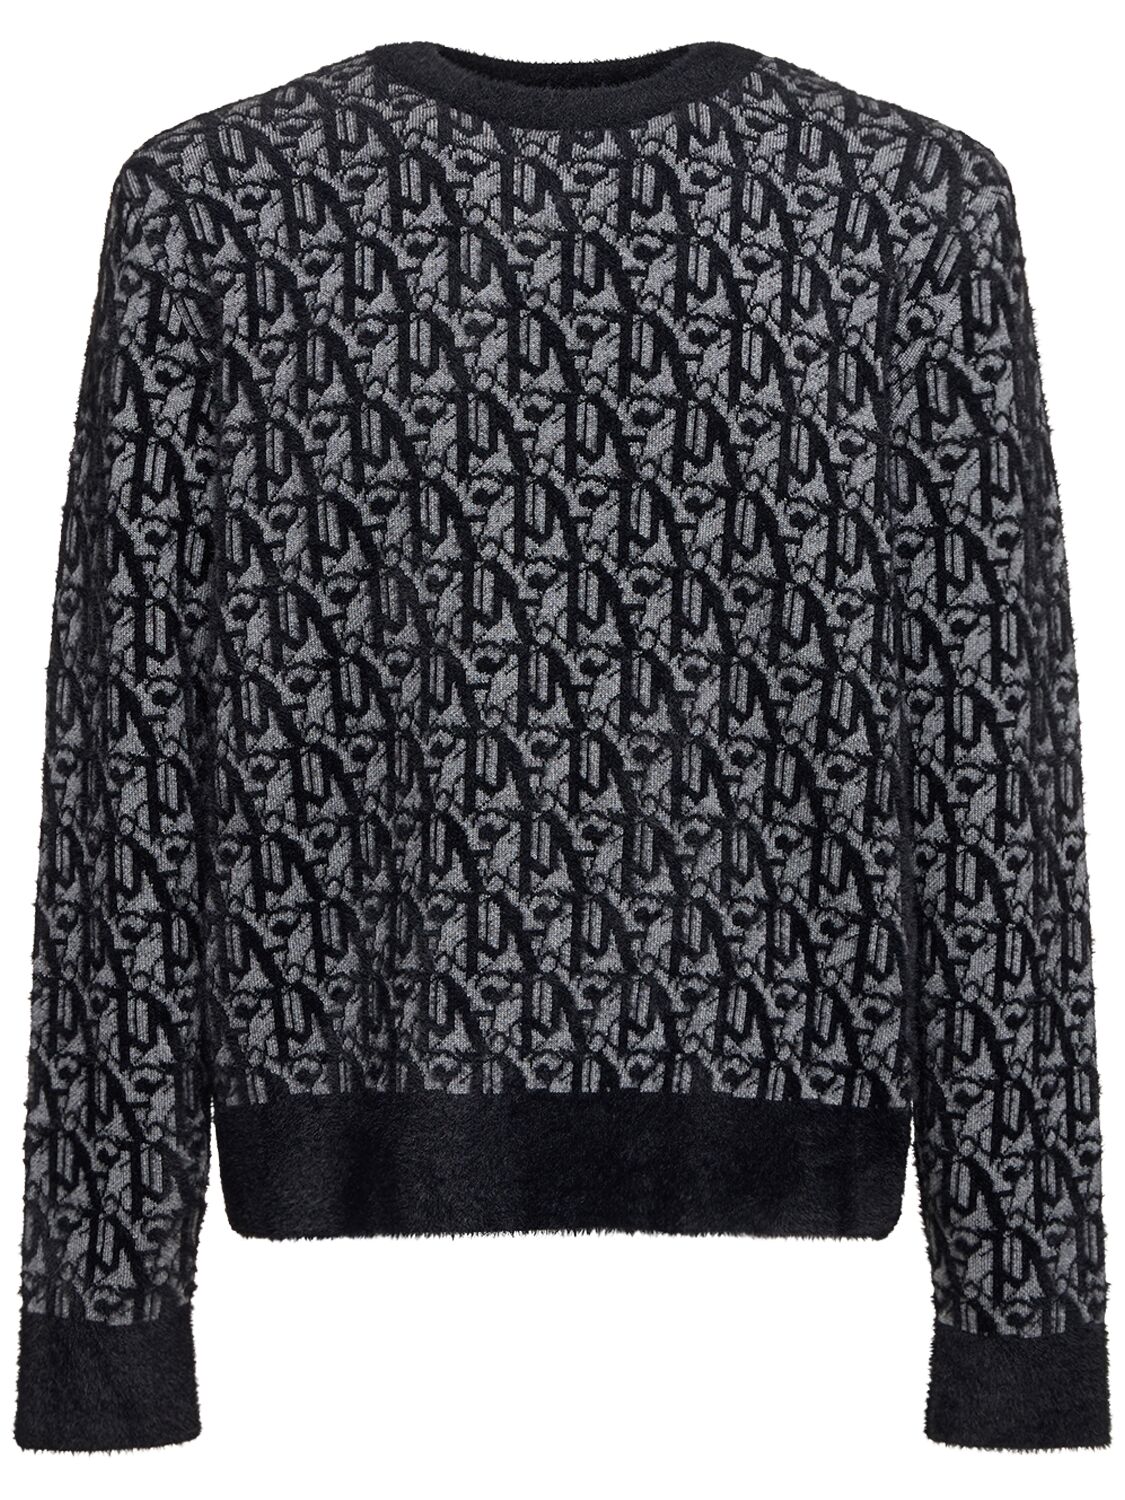 Monogram Jacquard Wool Blend Sweater